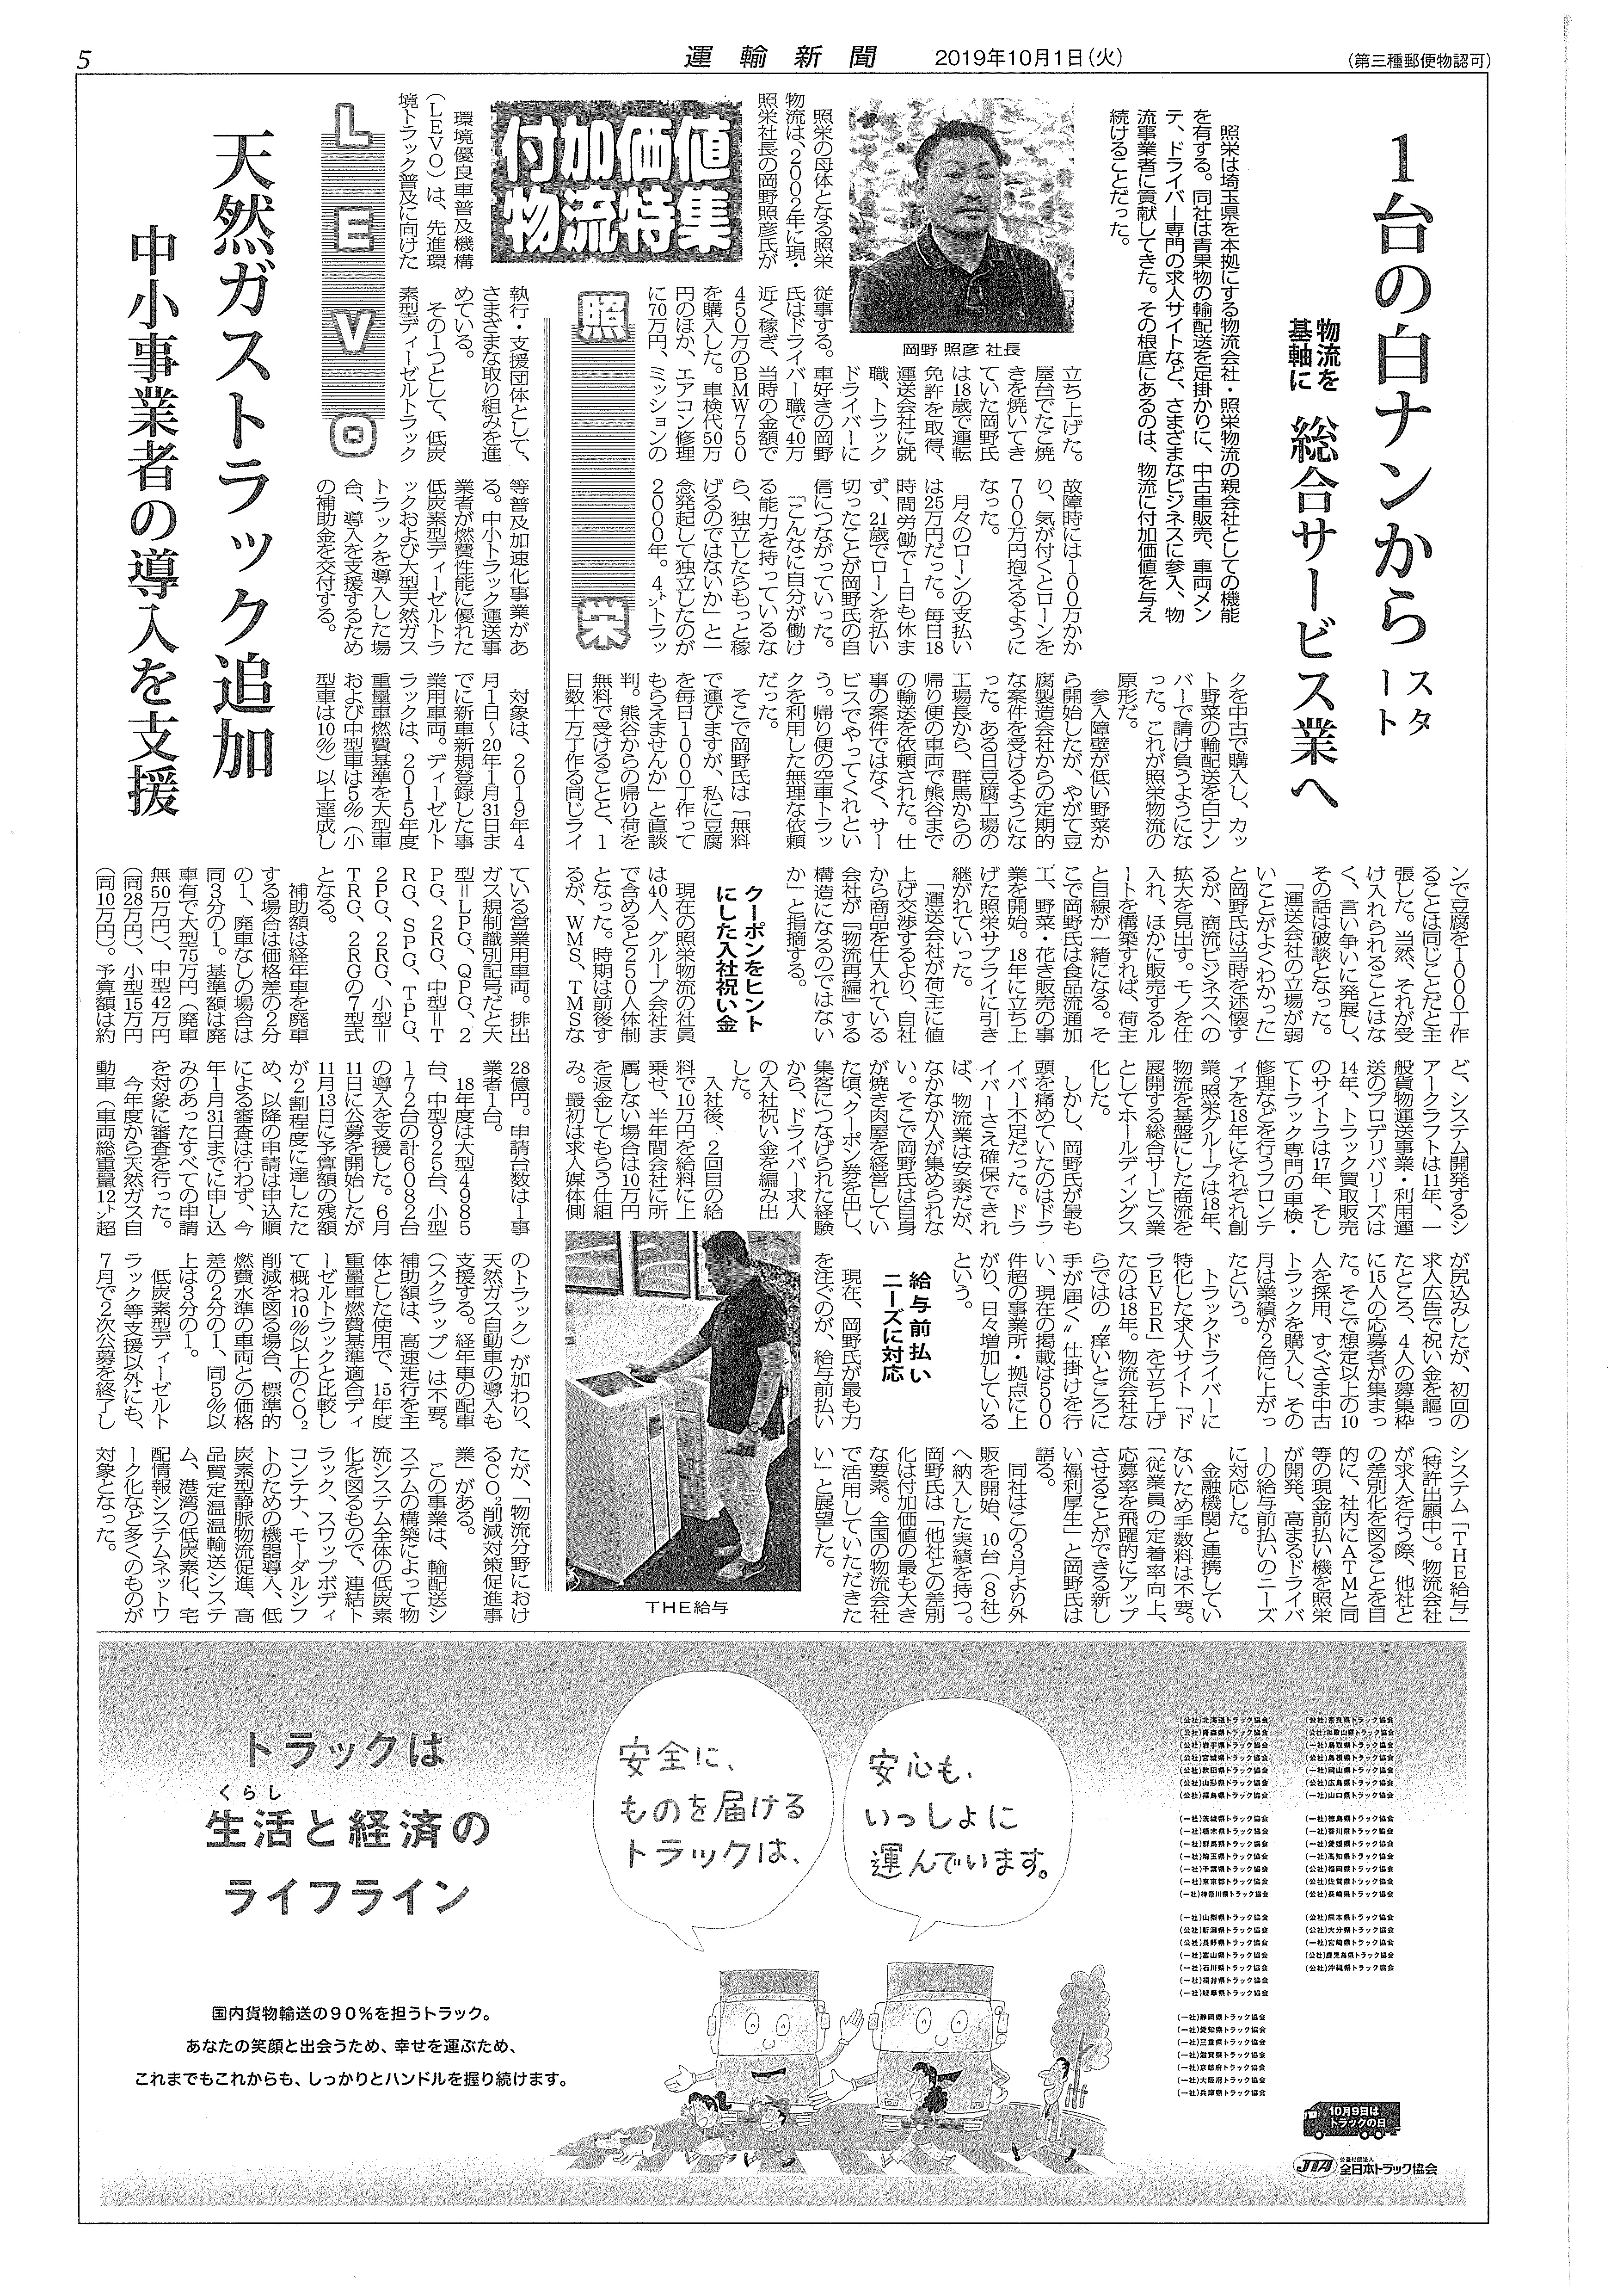 10月1日発行の「運輸新聞」